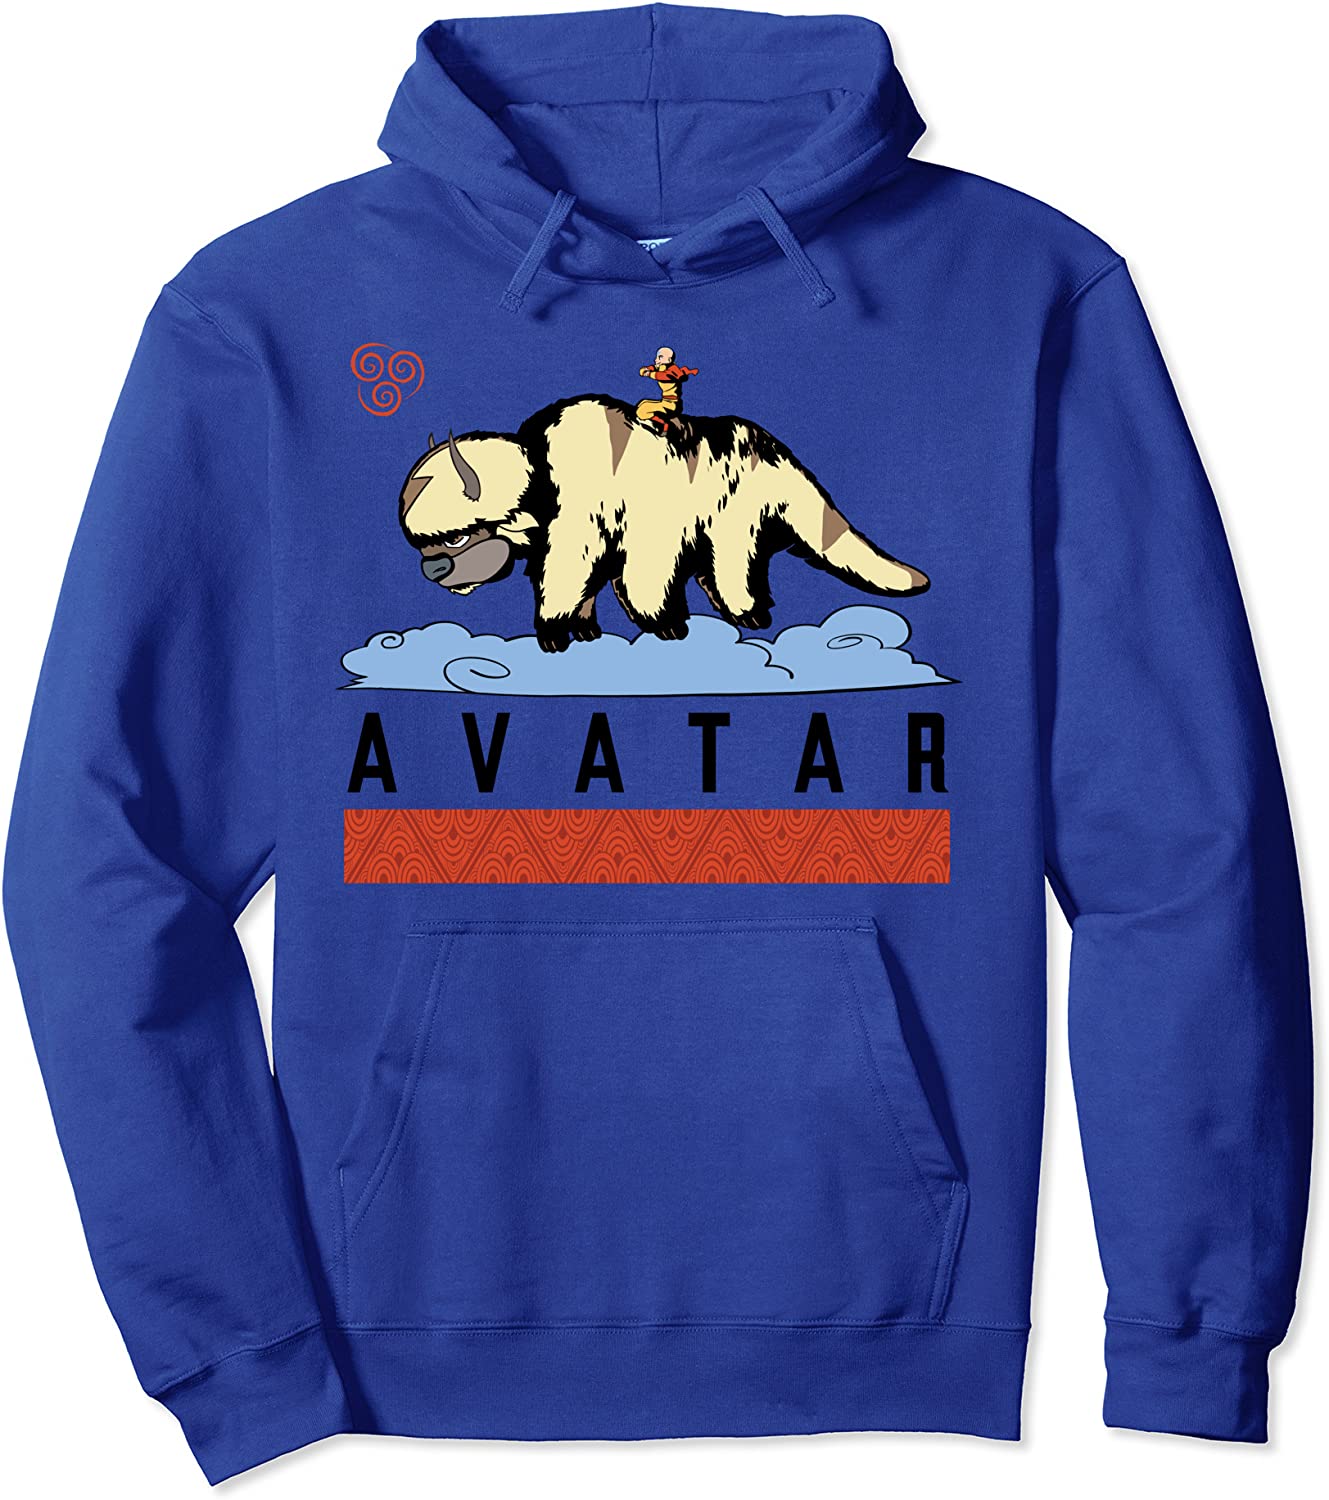 Anime Avatar The Last Airbender Hoodies - Streetwear Pullover Sweatshirt